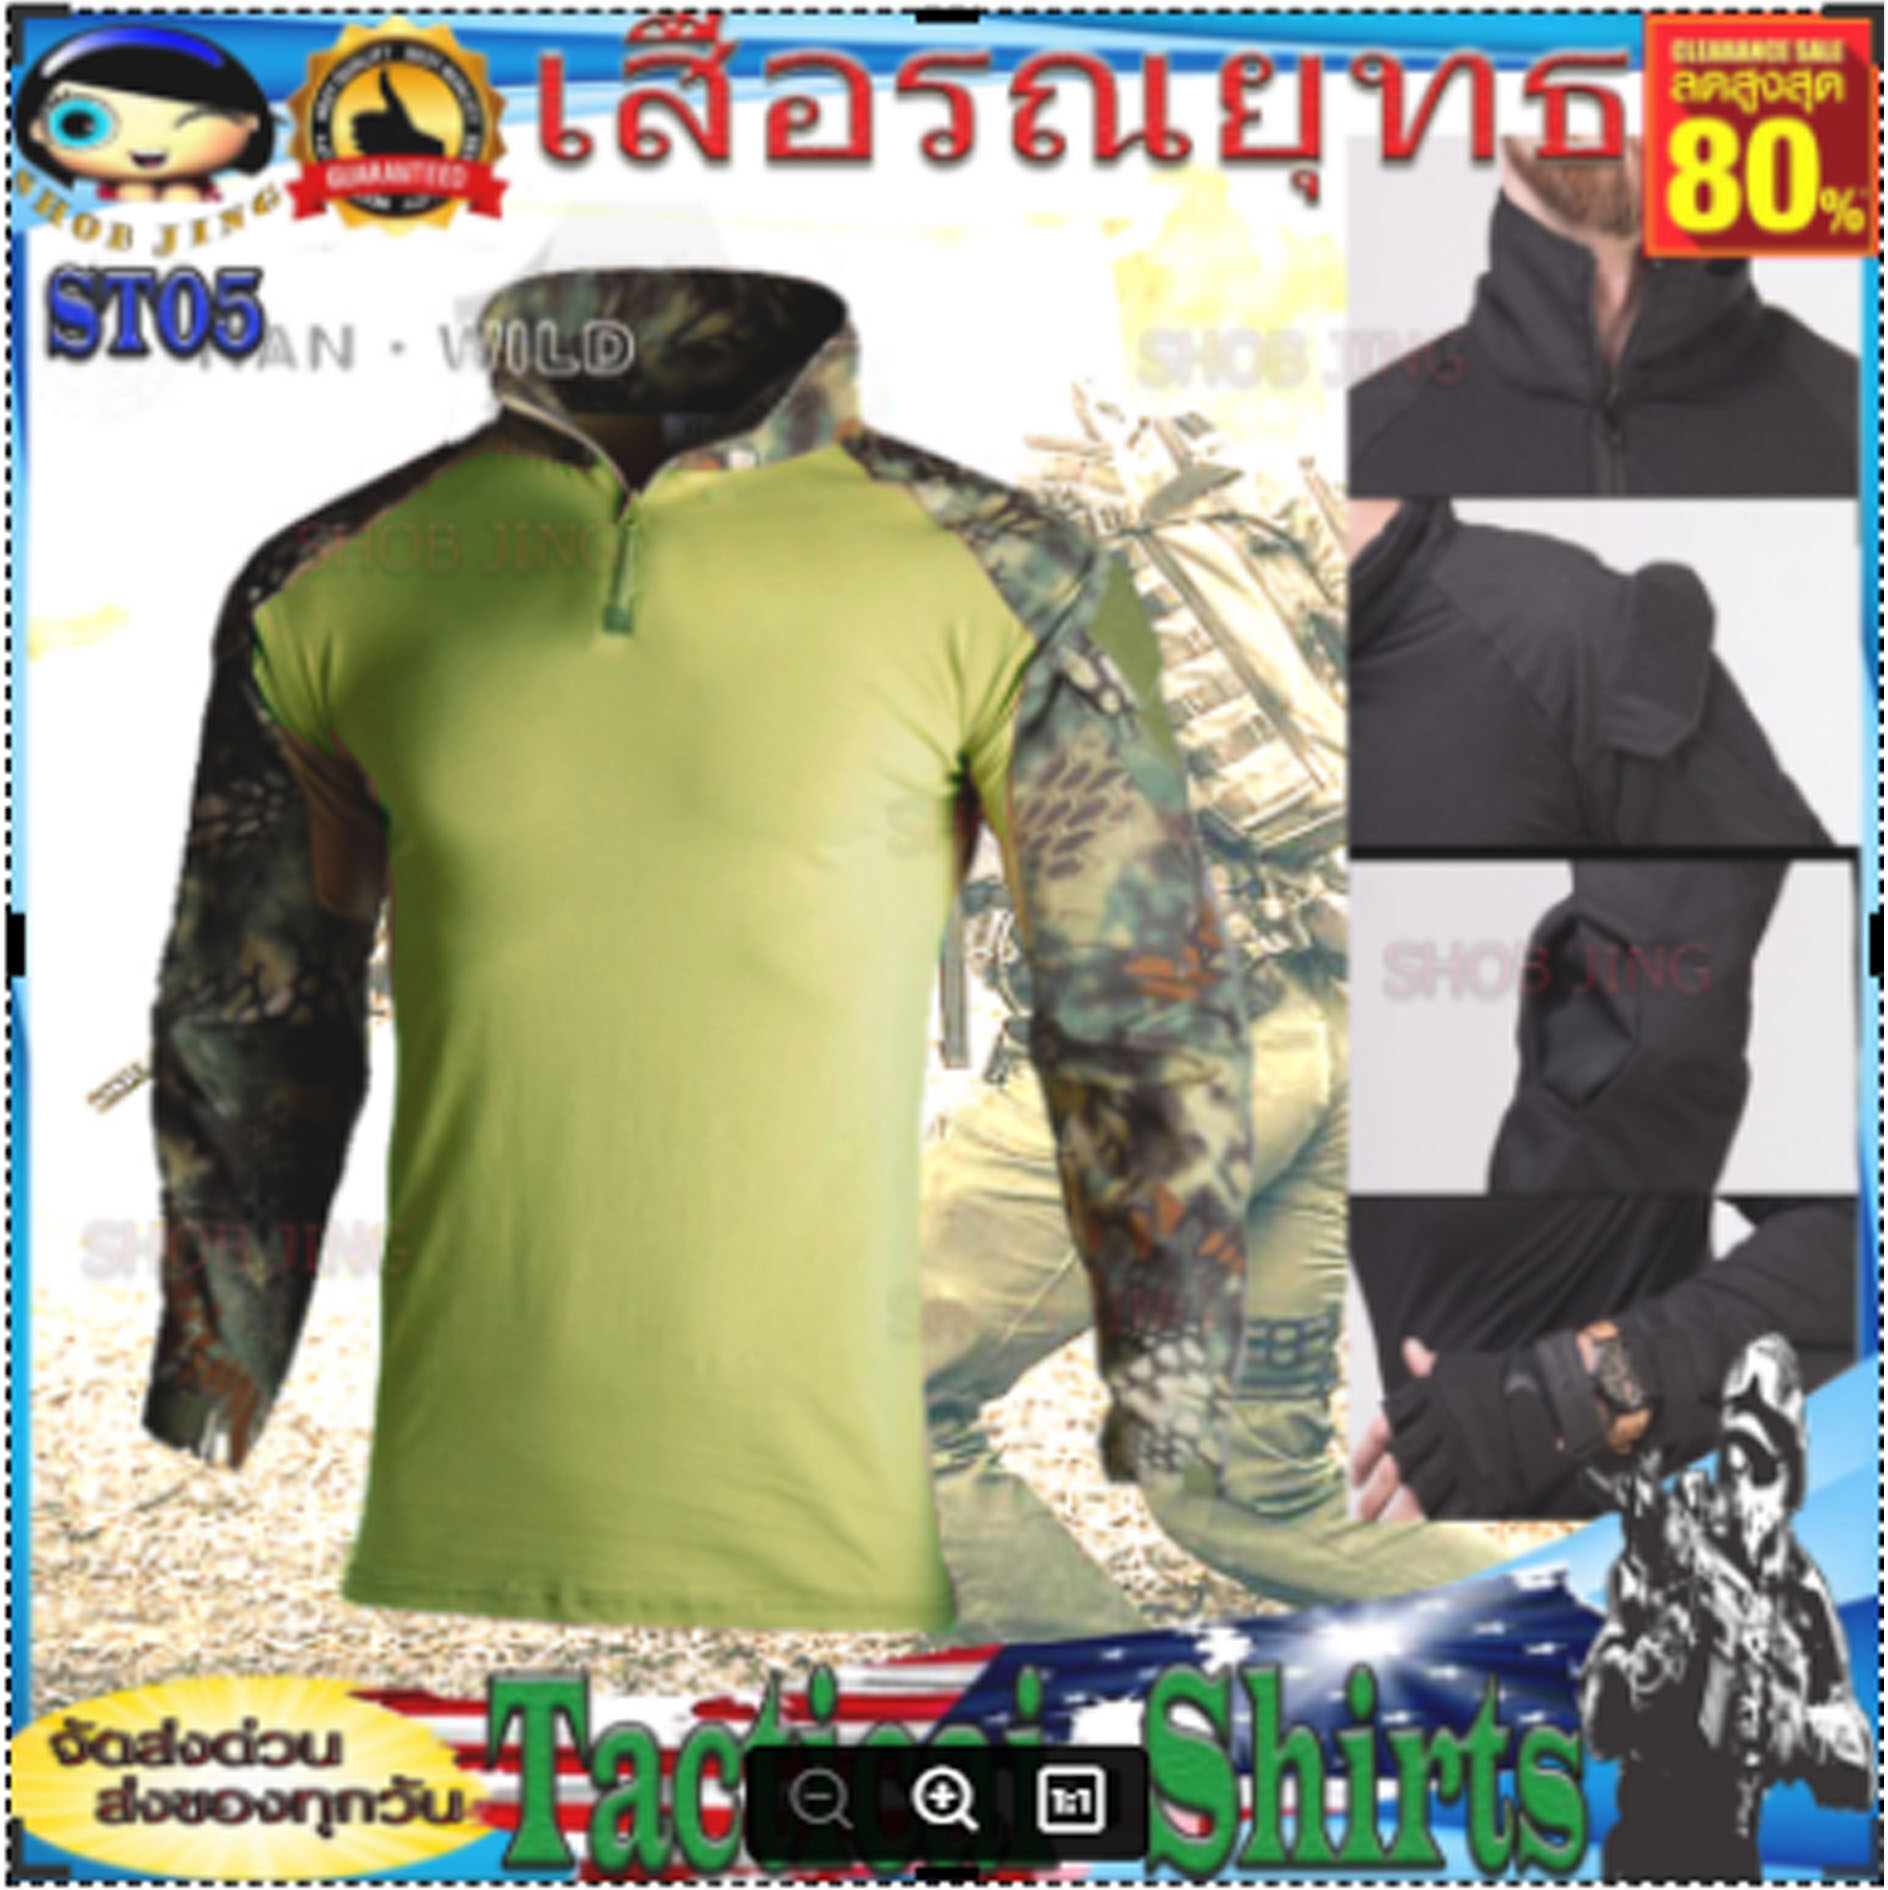 ST05 / ST07 เสื้อผู้ชายแขนยาวยุทธวิธีมีซิป เดินป่าล่าสัตว์ลาดตระเวนแห้งเร็ว  เสื้อคอมแบทเชิ้ตแขนยาว เสื้อยุทธวิธีทหารCombatT-shirt เนื้อผ้านิ่